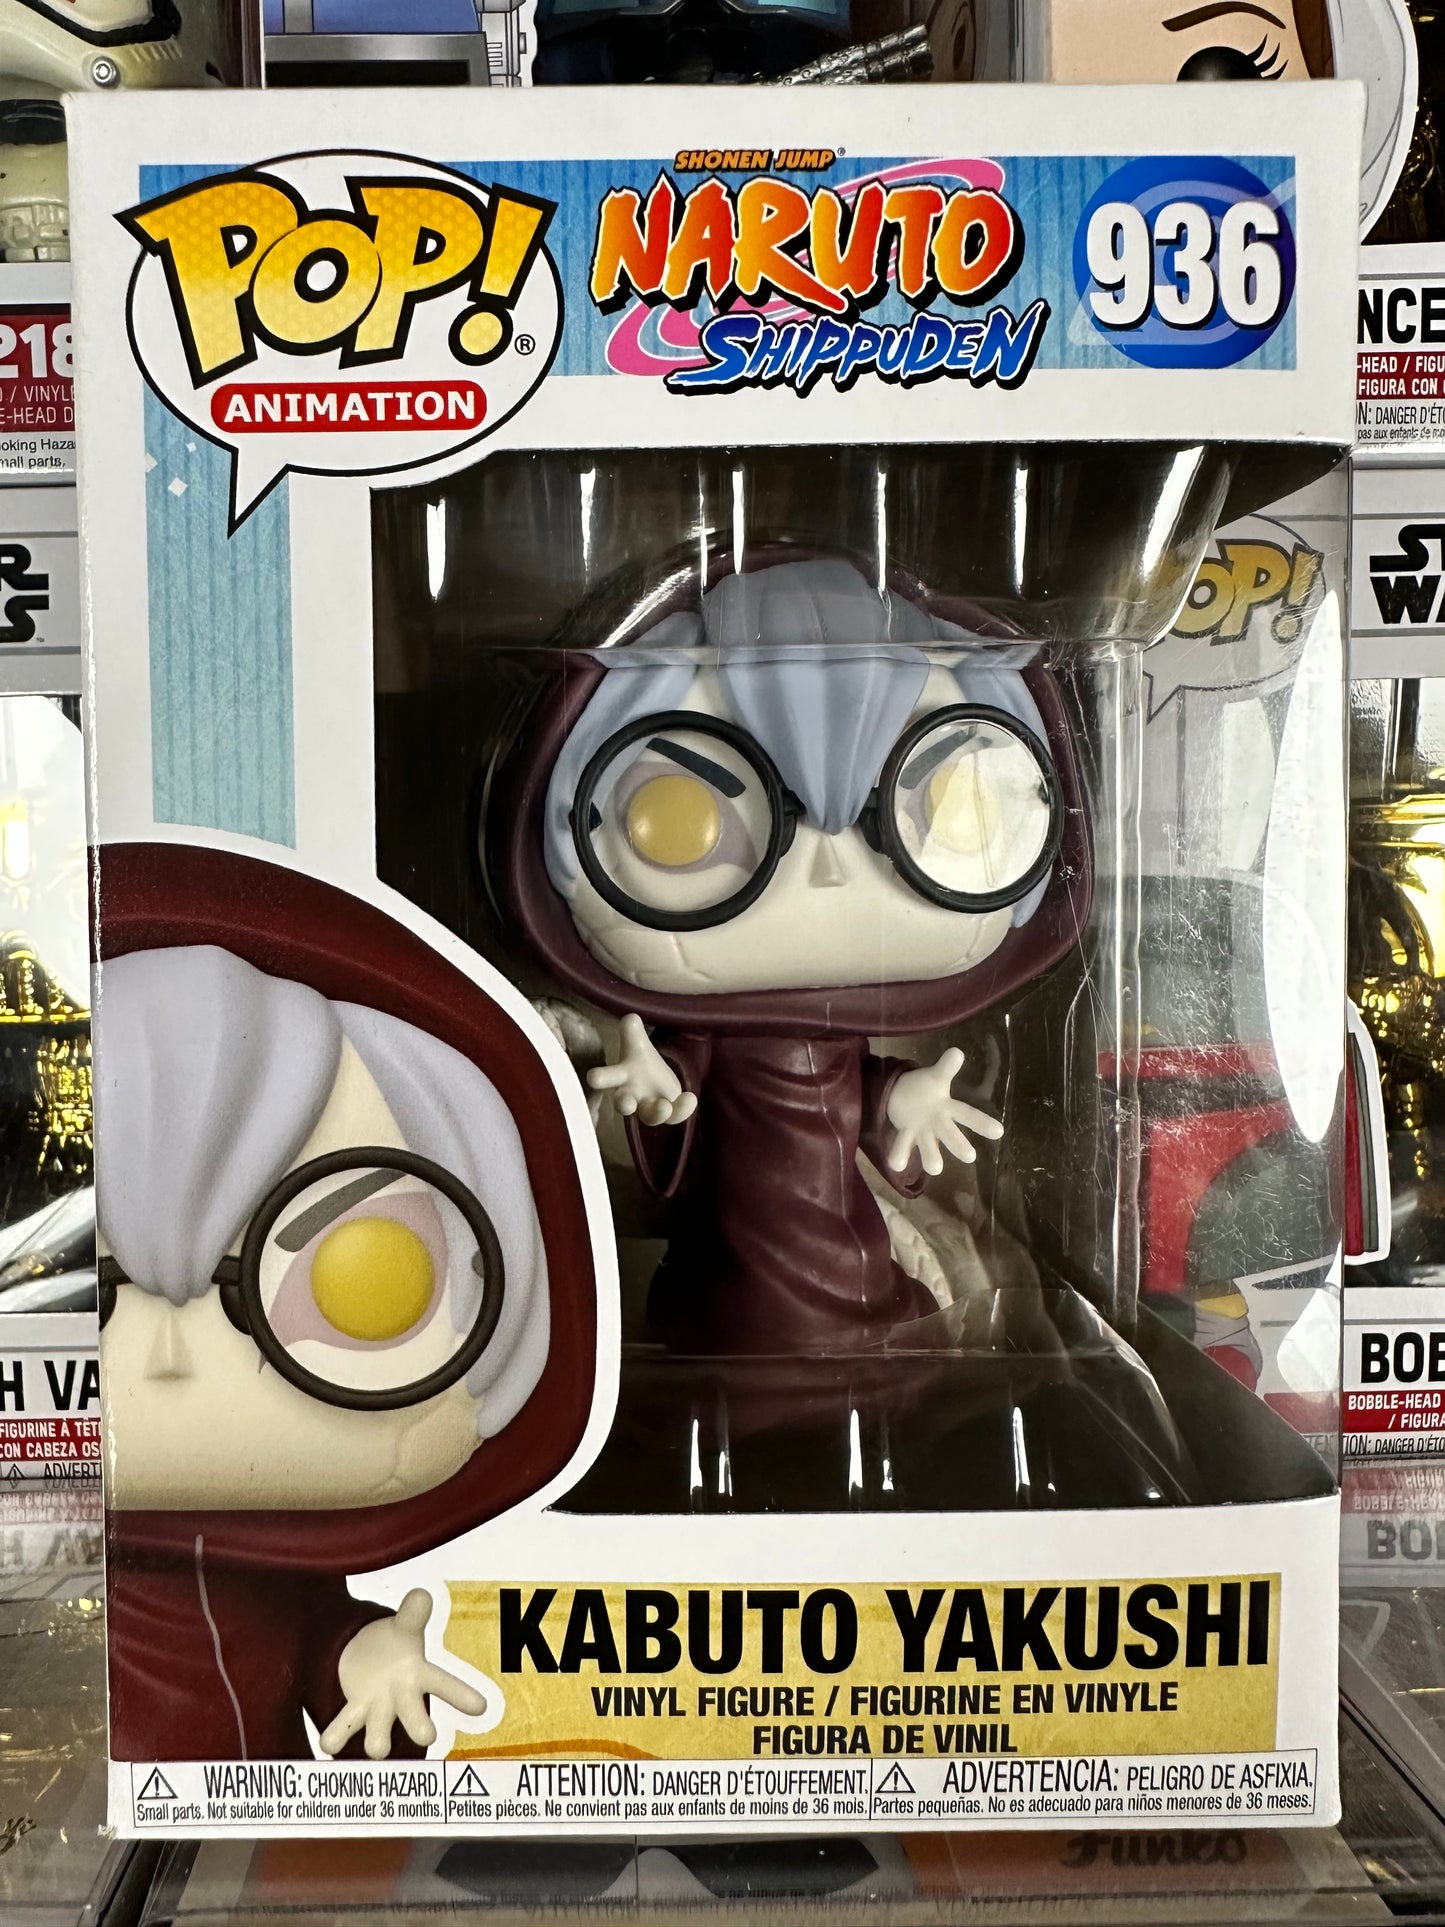 Naruto Shippuden - Kabuto Yakushi (936)